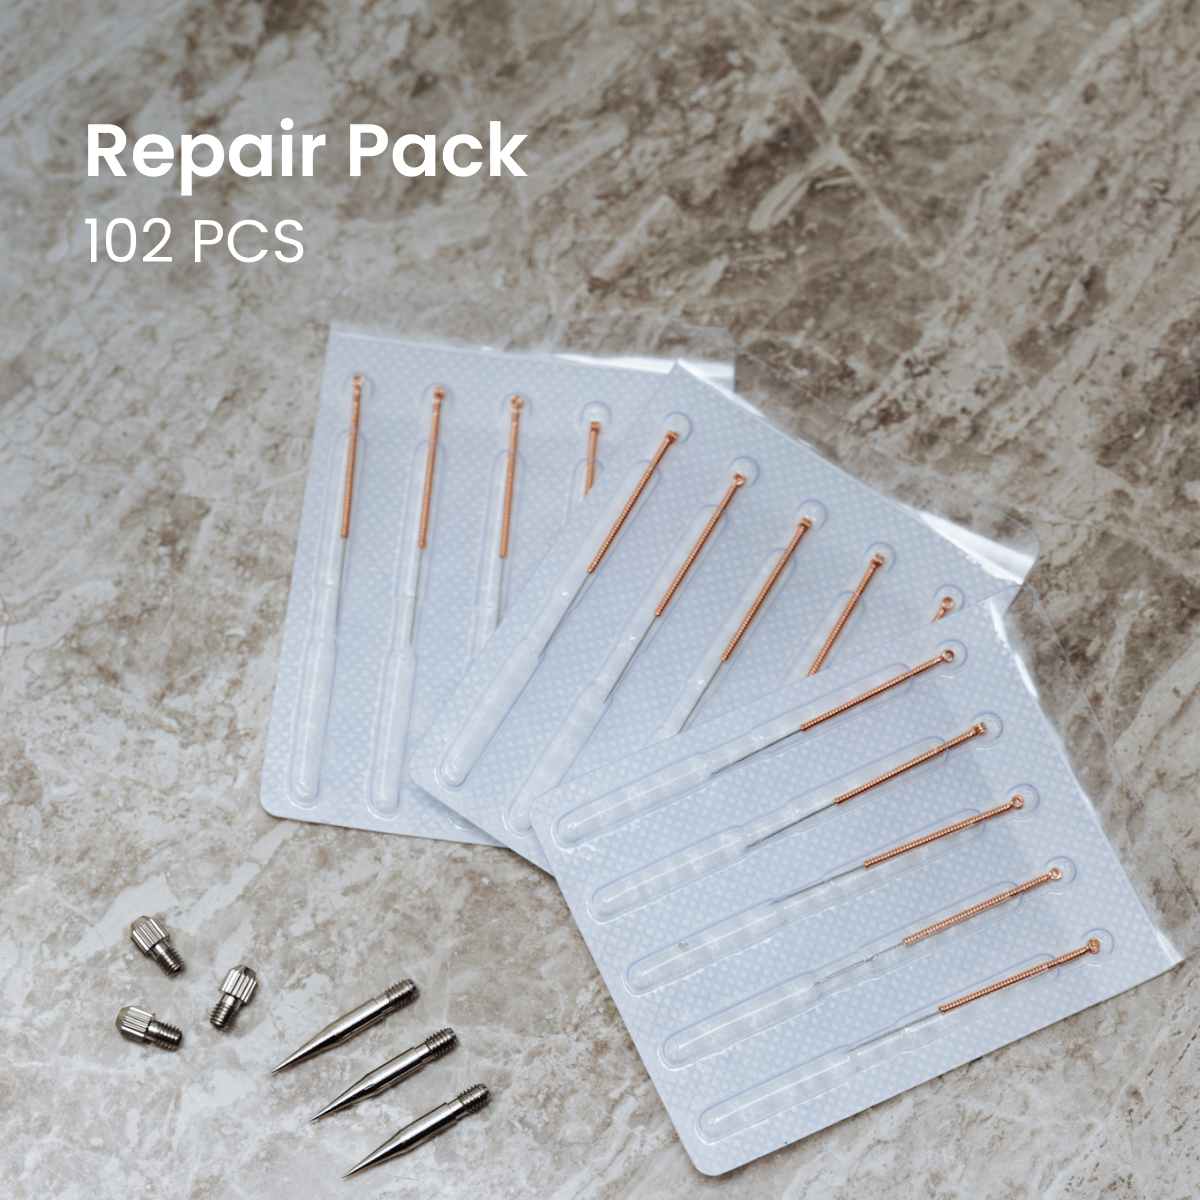 Bundle Deal: Trio Kit + Repair Pack + Free Guidebook